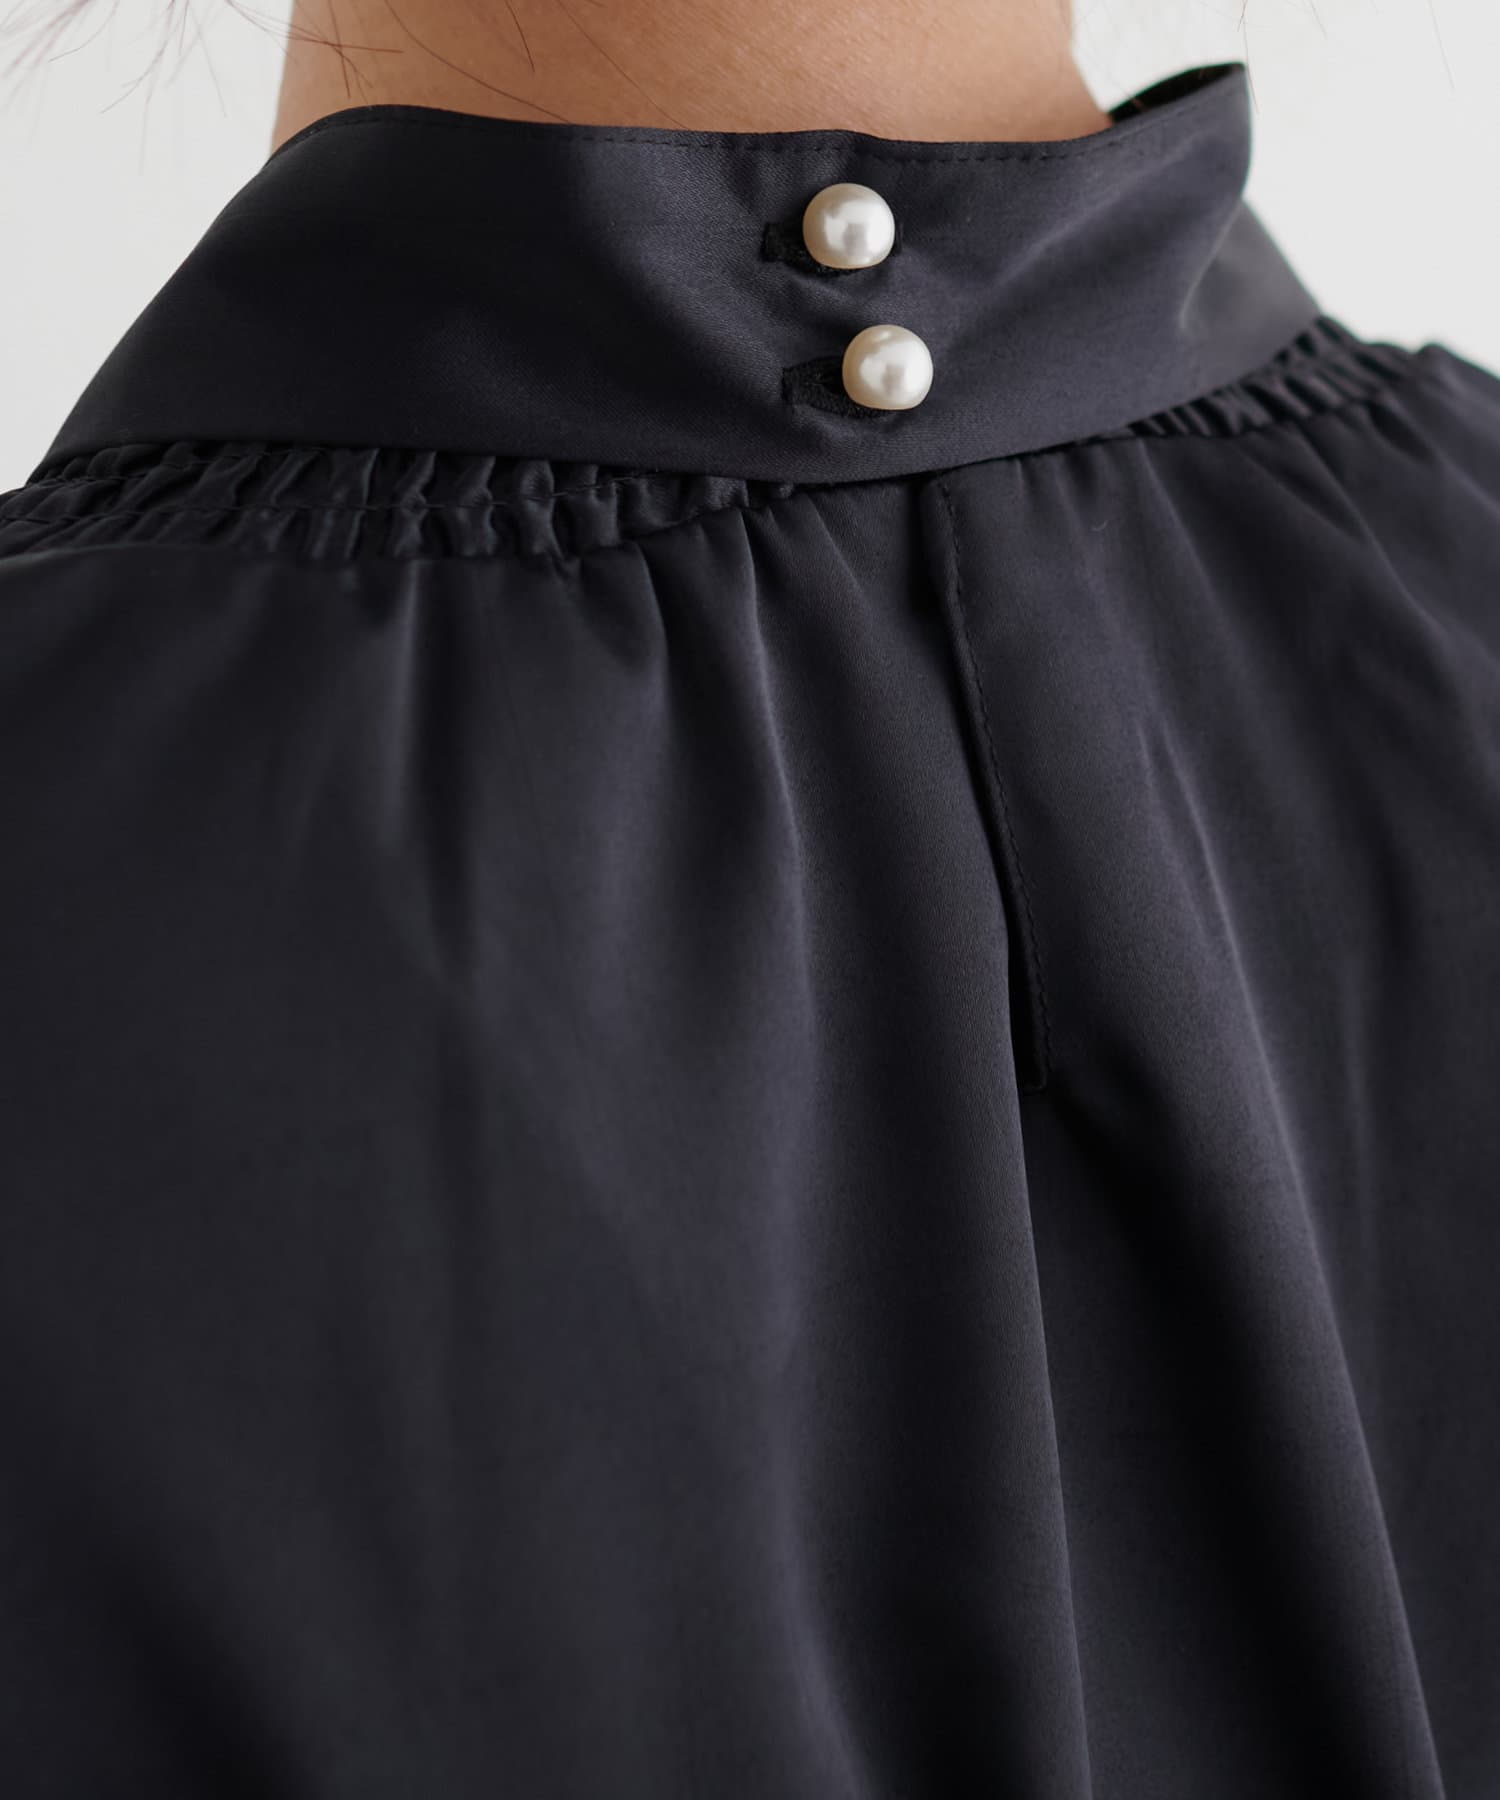 natural couture(ナチュラルクチュール) ボウタイ付き衿シャーリングサテンブラウス